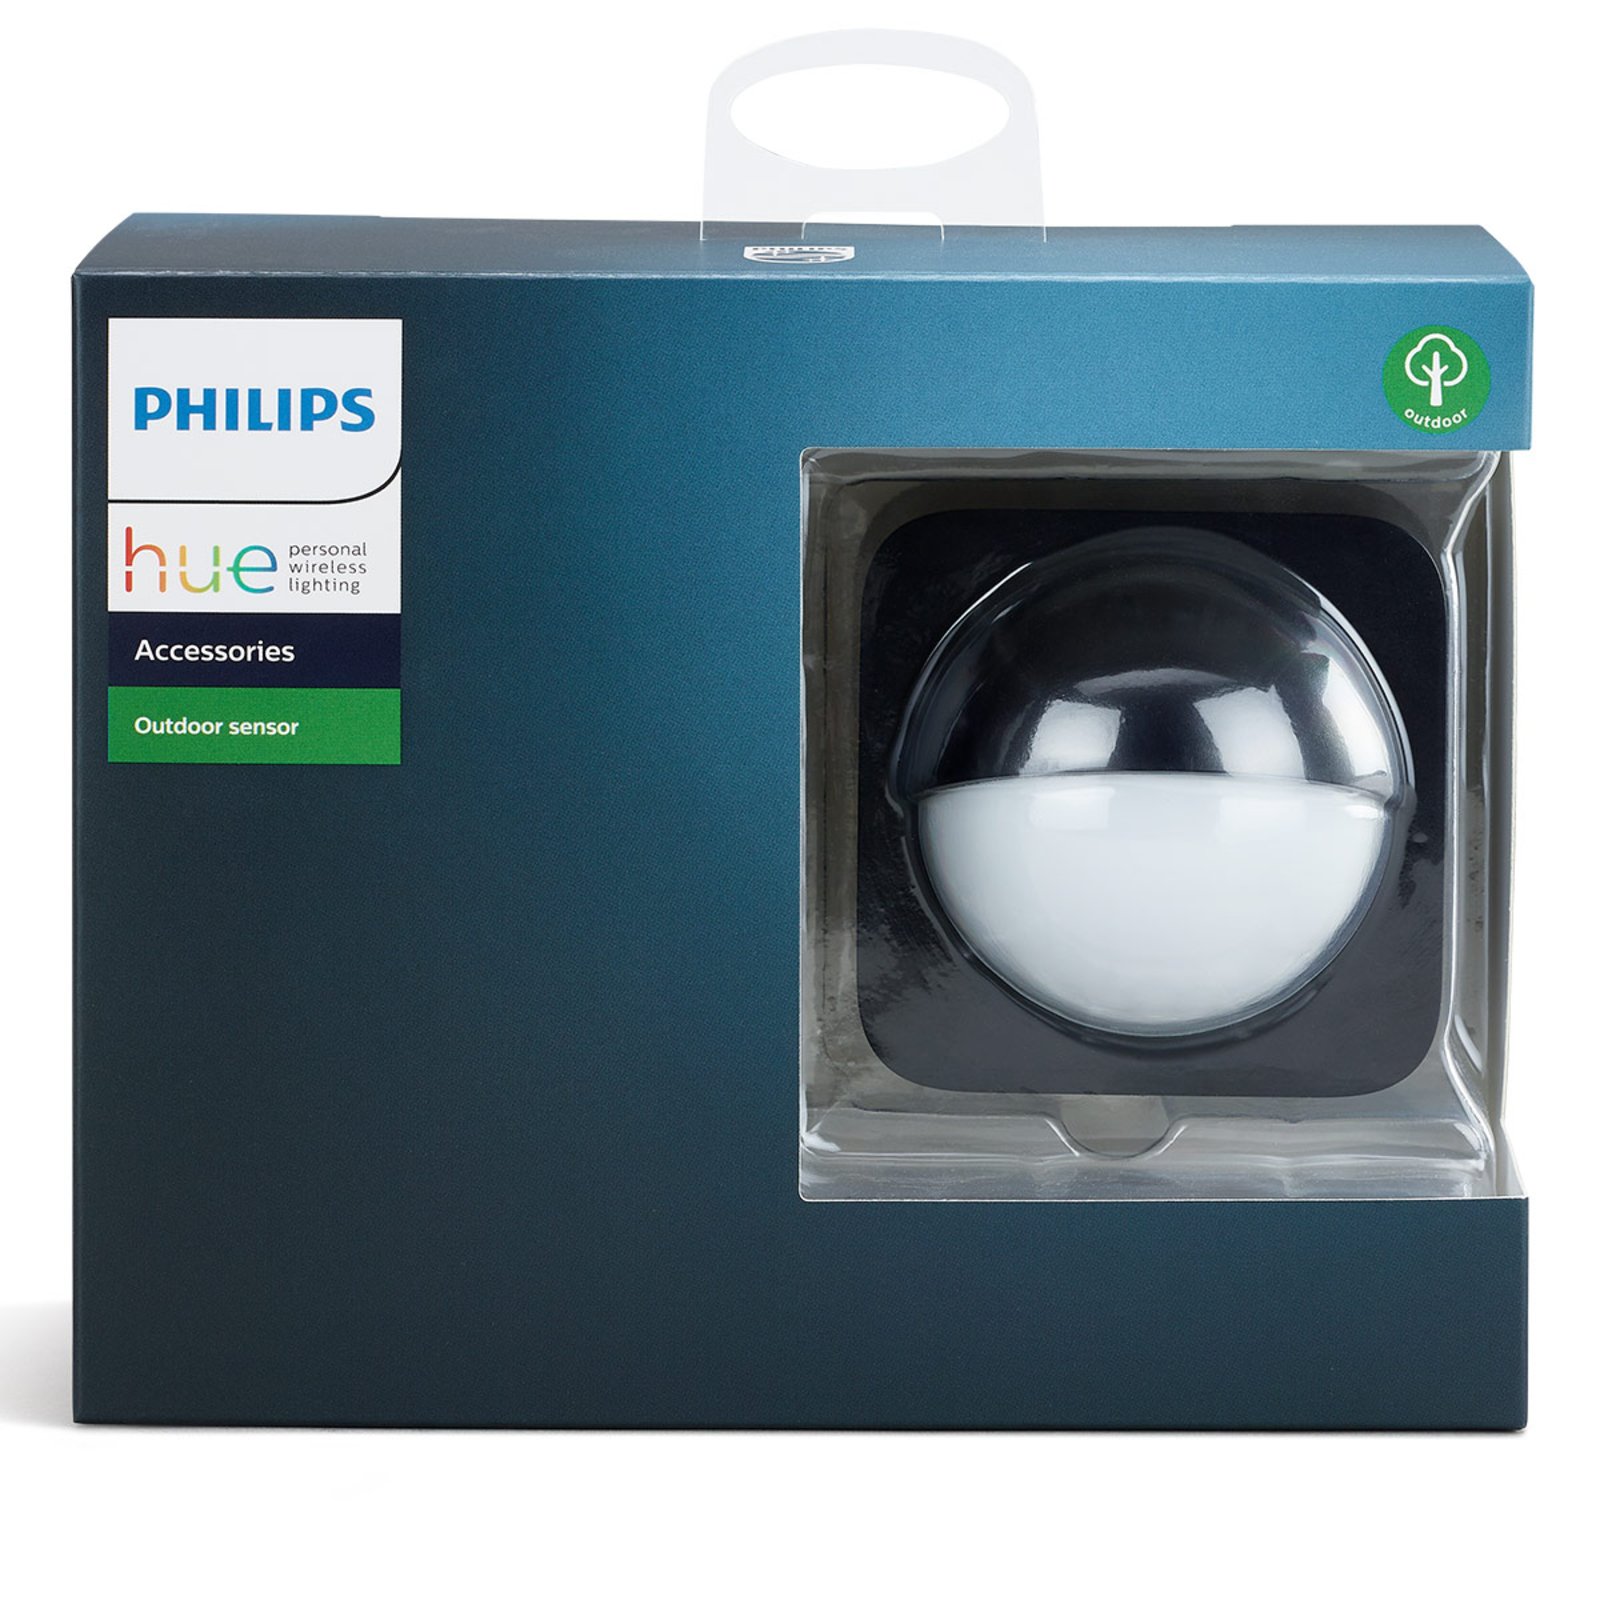 Philips Hue Outdoor Sensor detector de movimiento